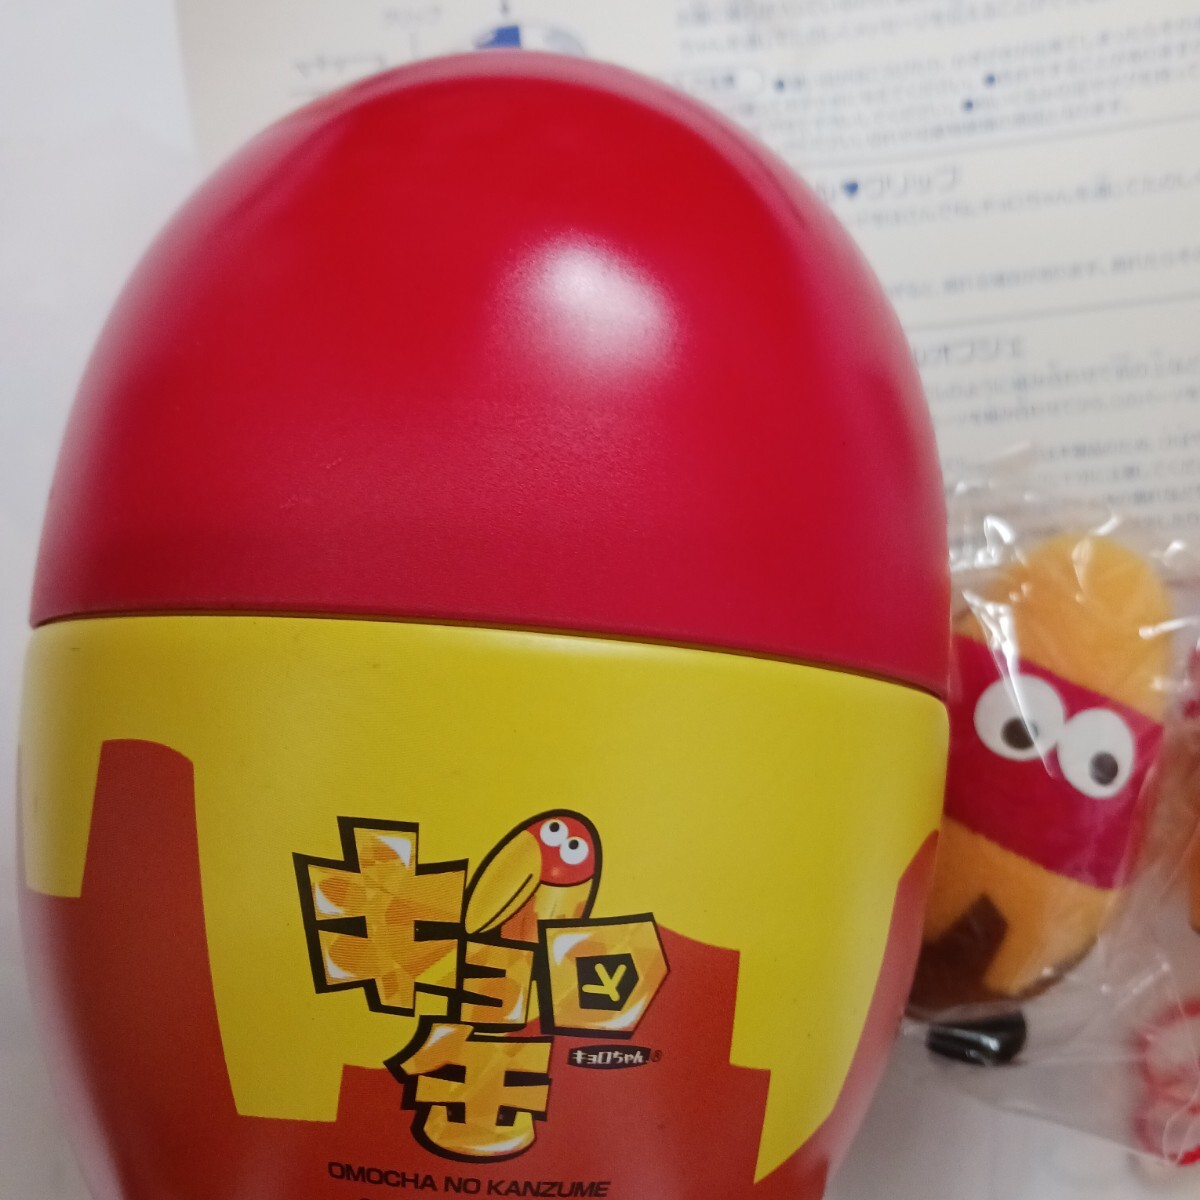 kyoro жестяная банка игрушка. can zume новый товар не использовался товар бесплатная доставка!